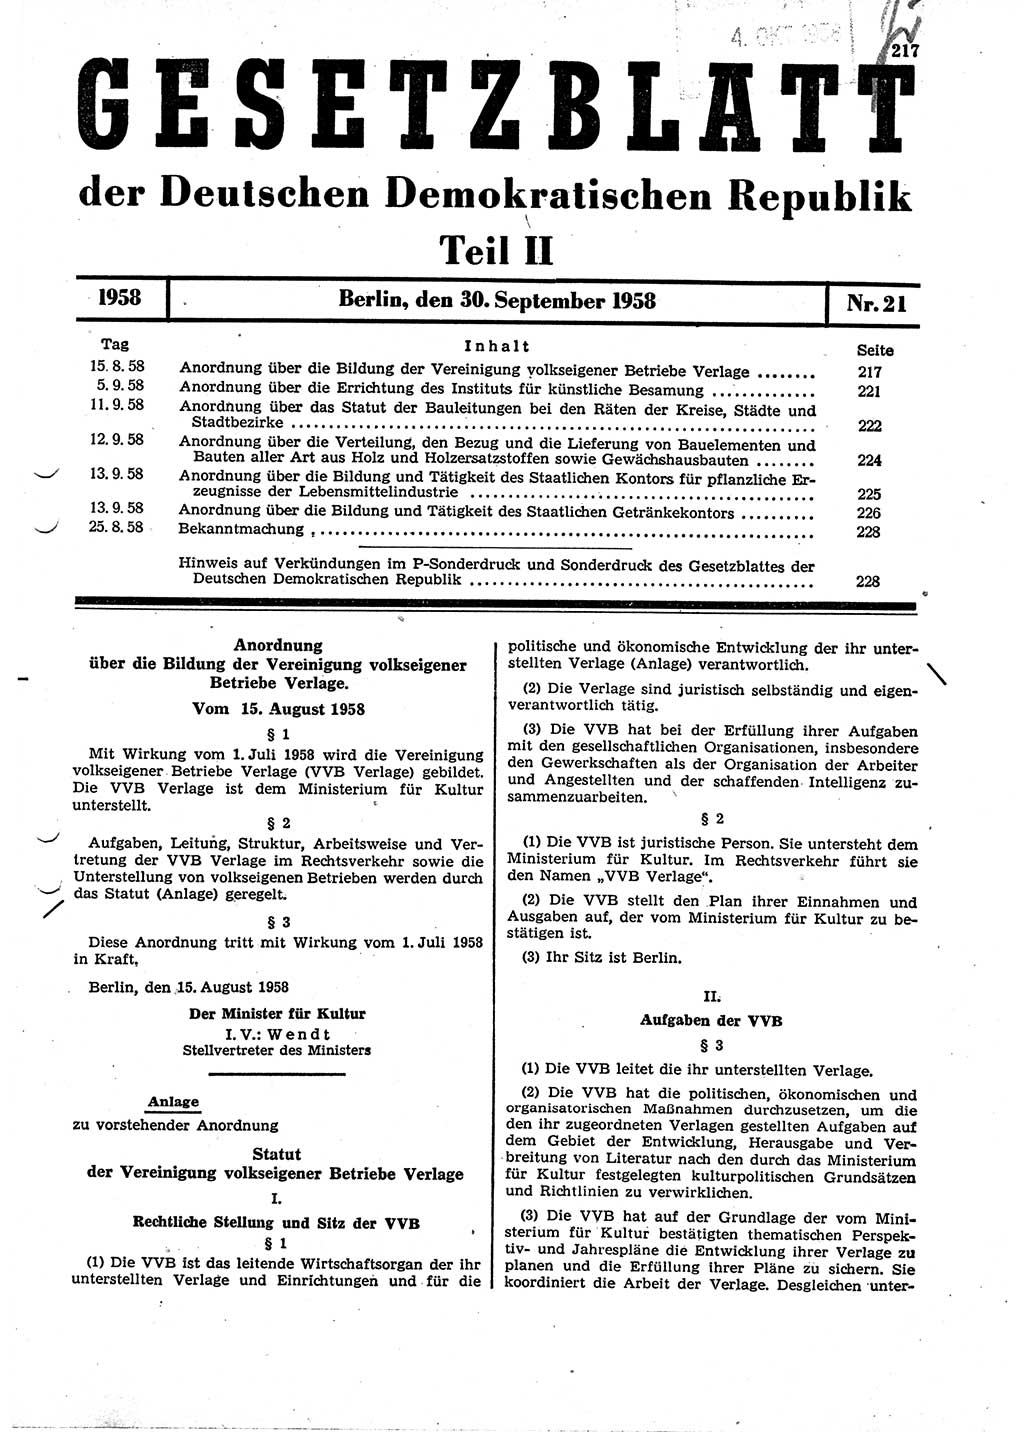 Gesetzblatt (GBl.) der Deutschen Demokratischen Republik (DDR) Teil ⅠⅠ 1958, Seite 217 (GBl. DDR ⅠⅠ 1958, S. 217)